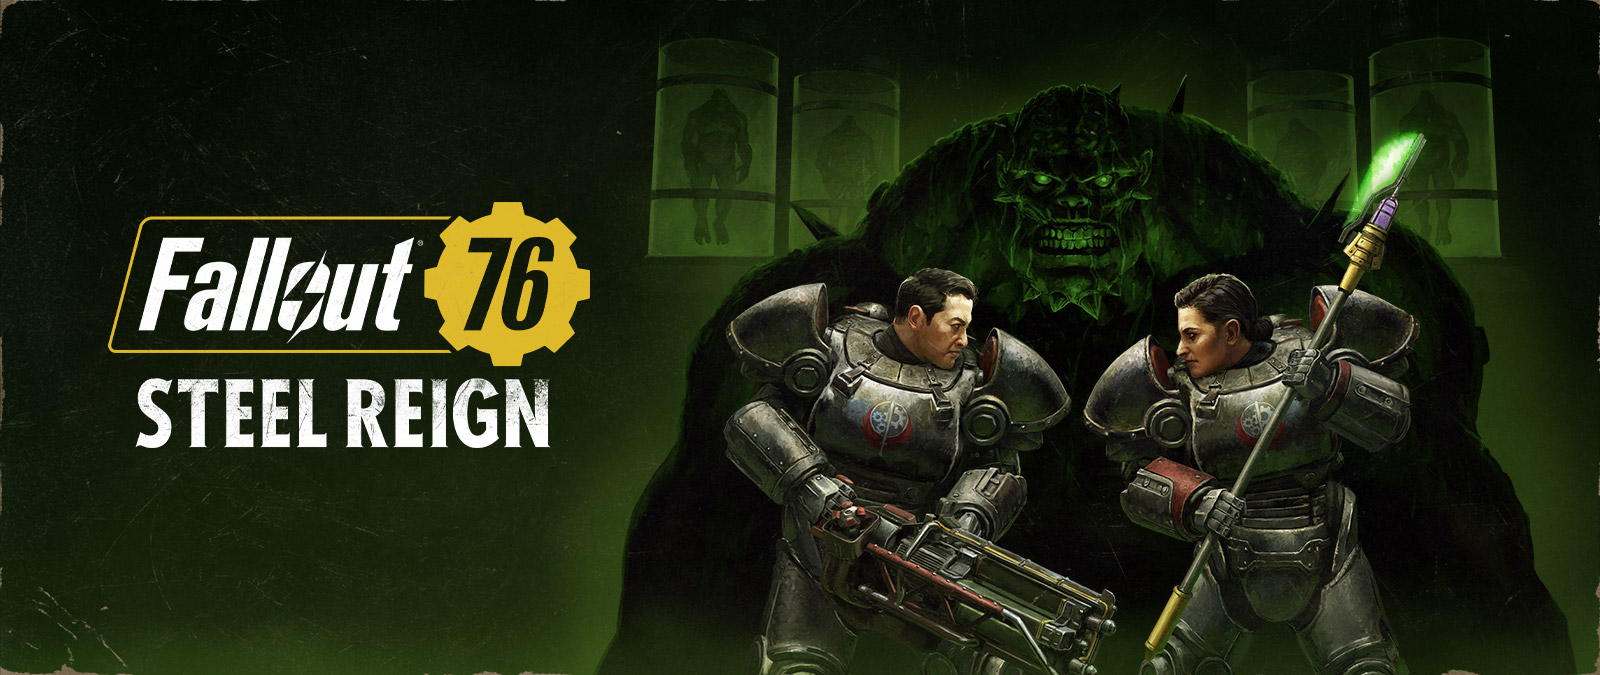 Fallout 76, Steel Reign, két robotruhás karakter szembeszáll egy nagy szörnyeteggel a háttérben.